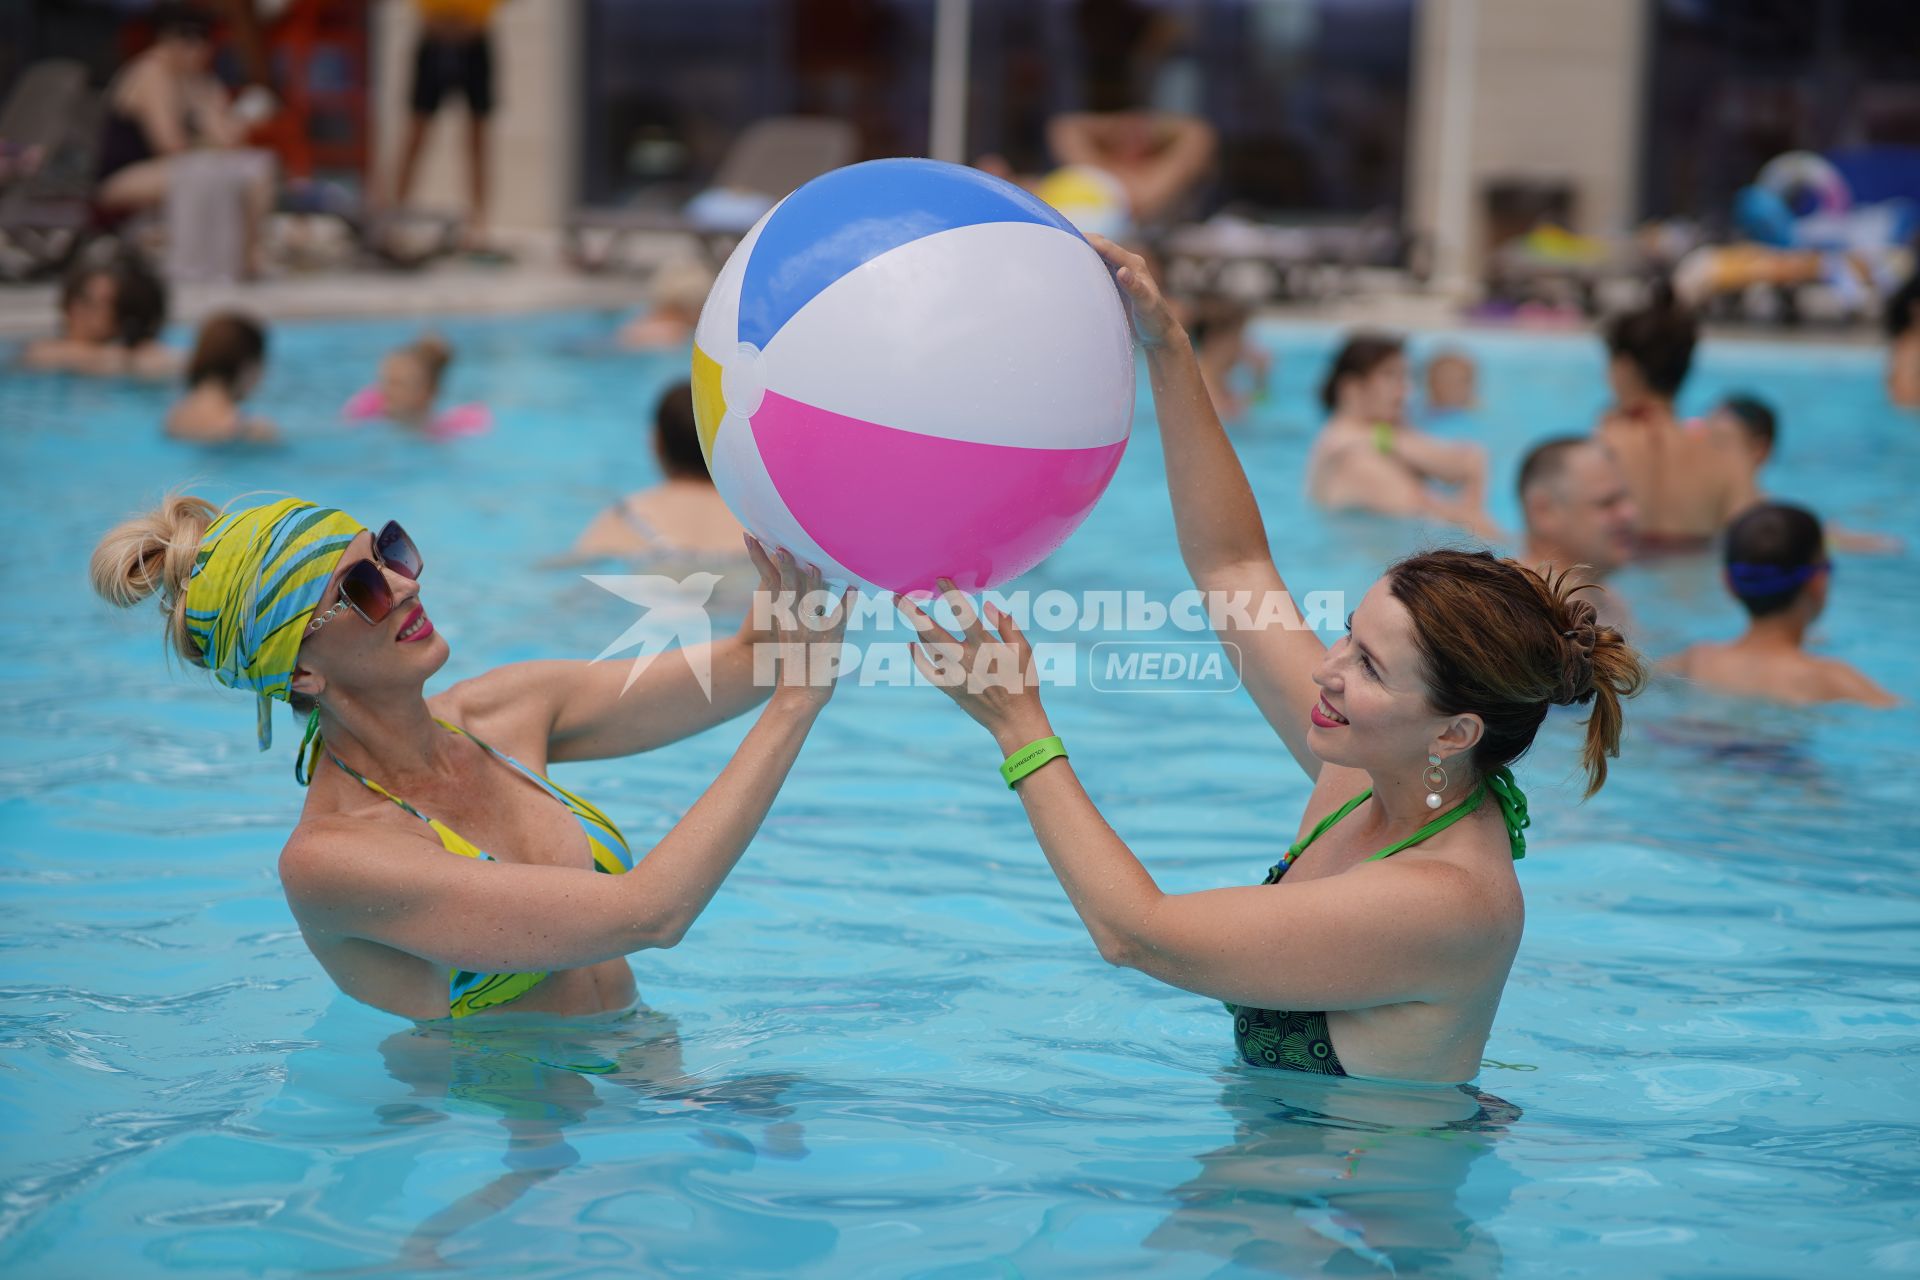 Самара. Девушки с надувным мячом плавают в бассейне.